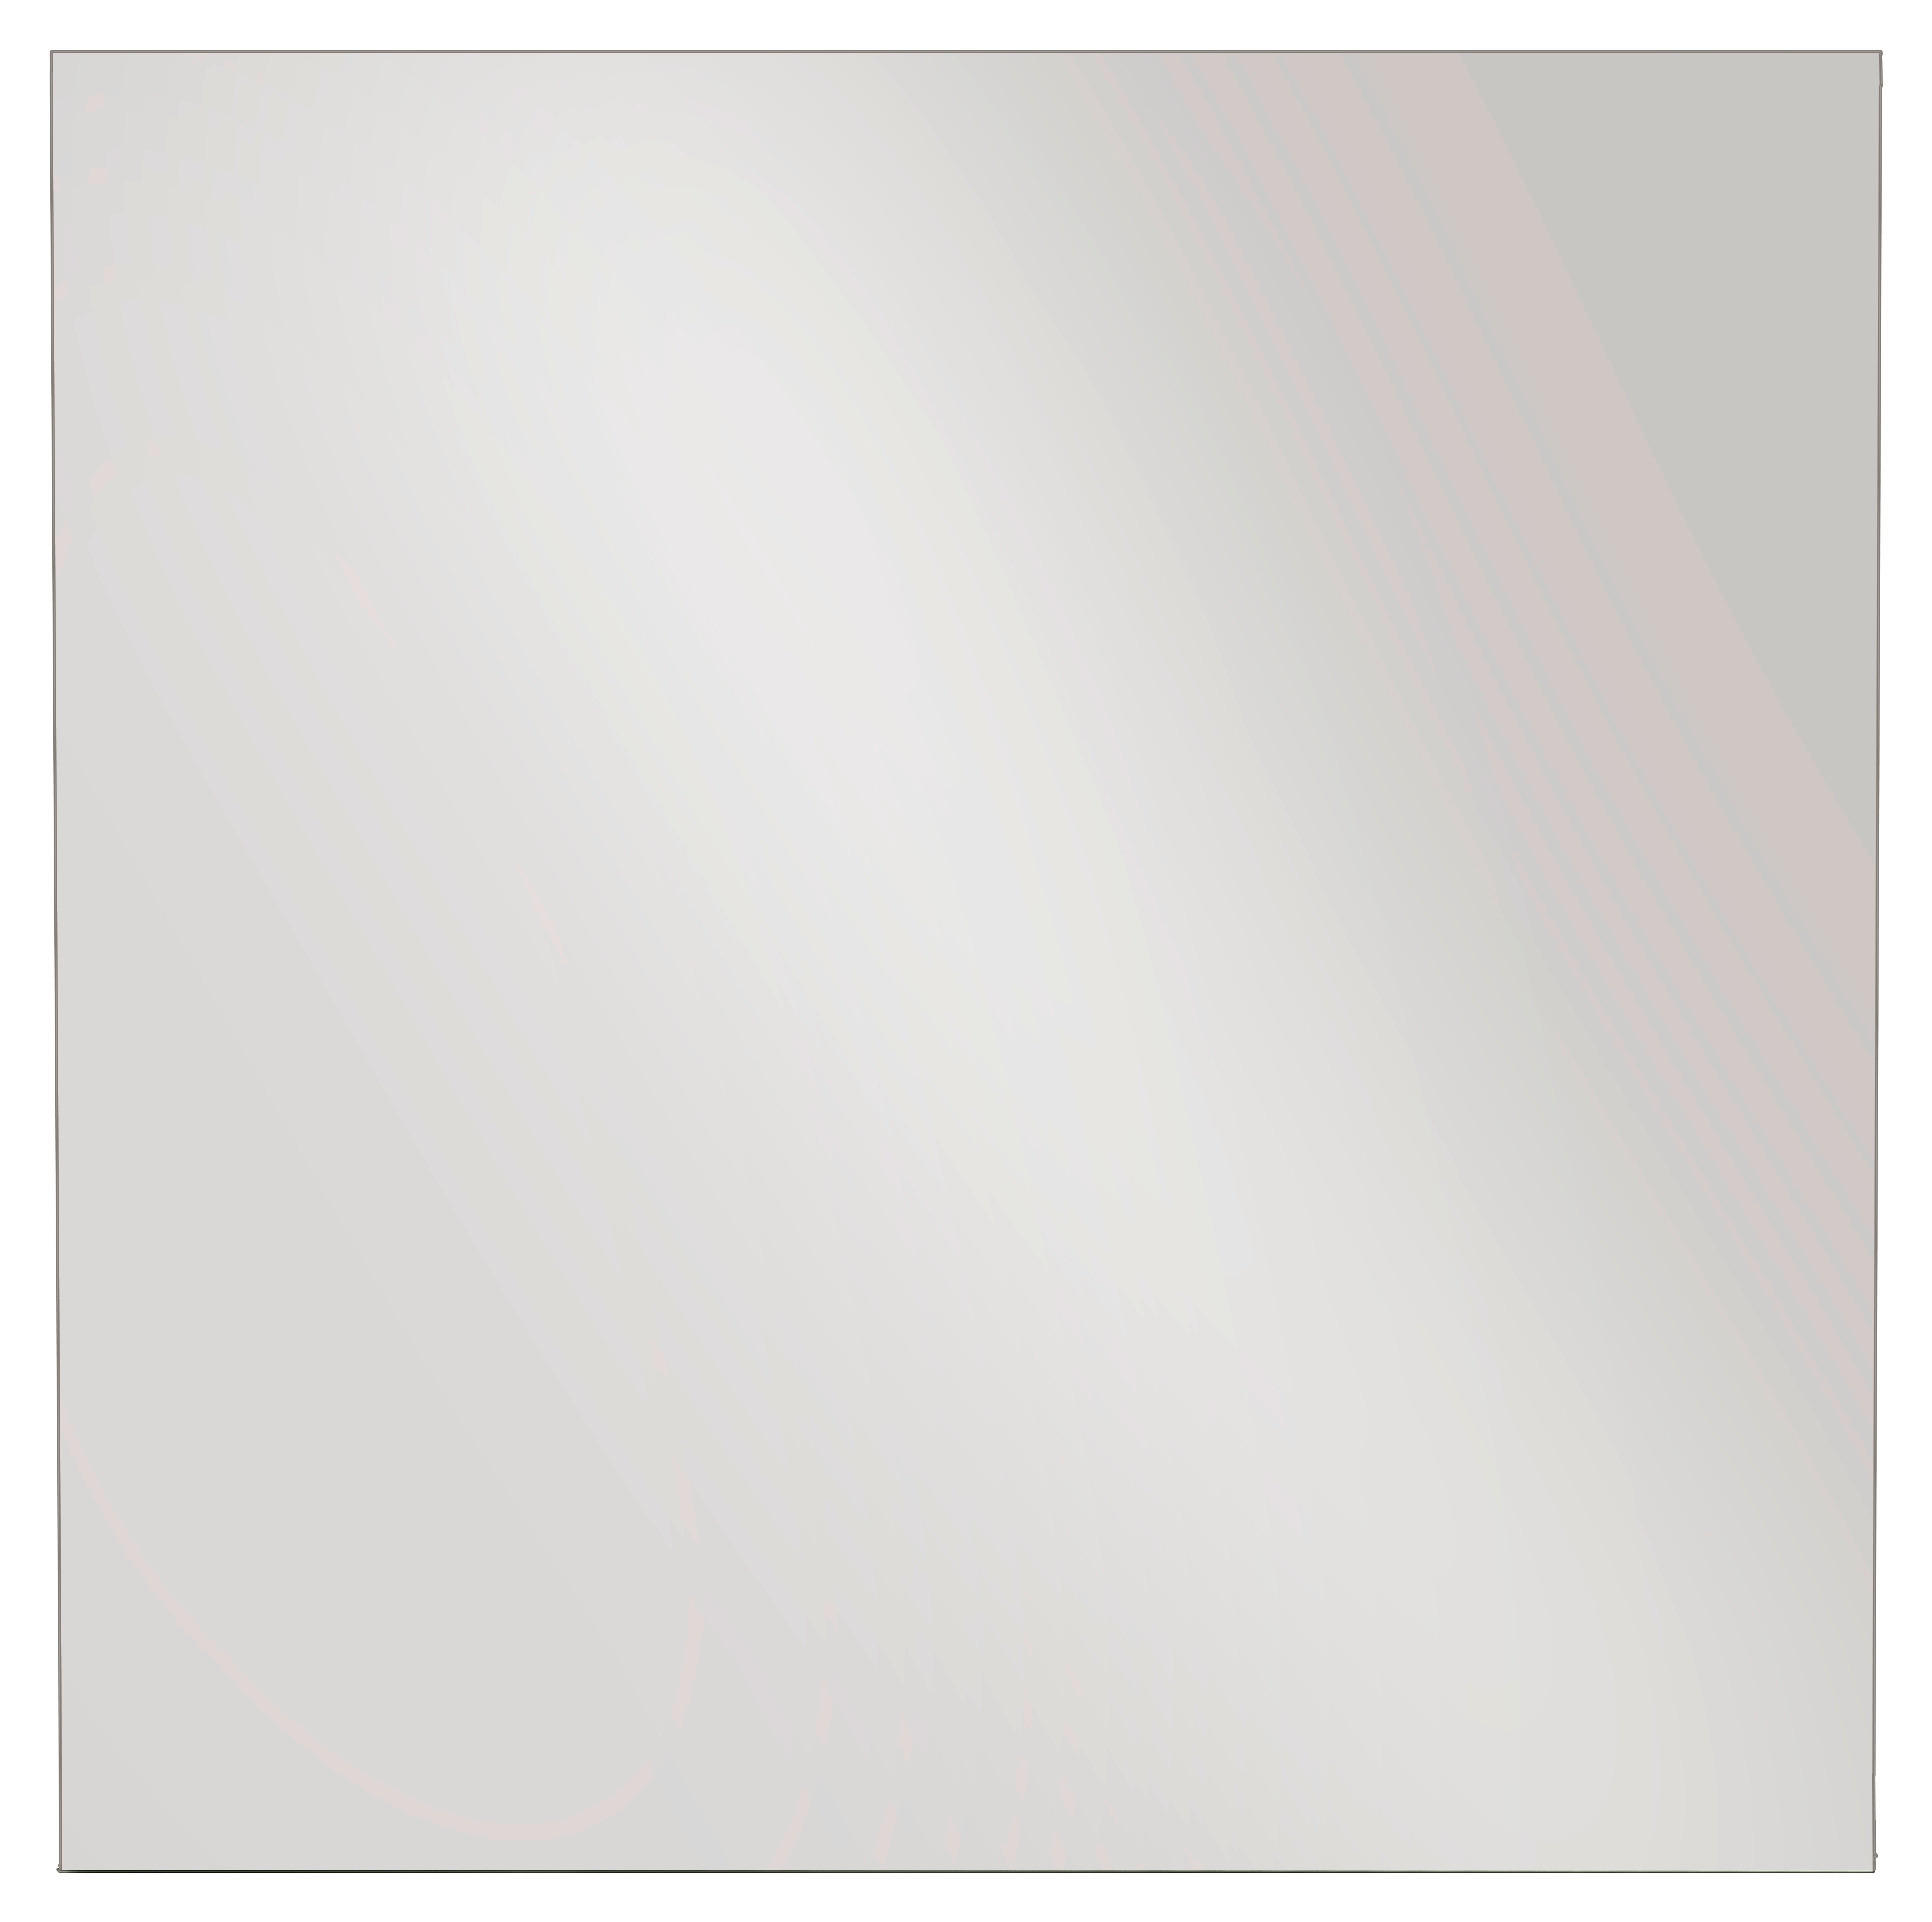 WANDSPIEGEL 102/98/2 cm    - Pastellgrün, Design, Glas (102/98/2cm) - Cassando